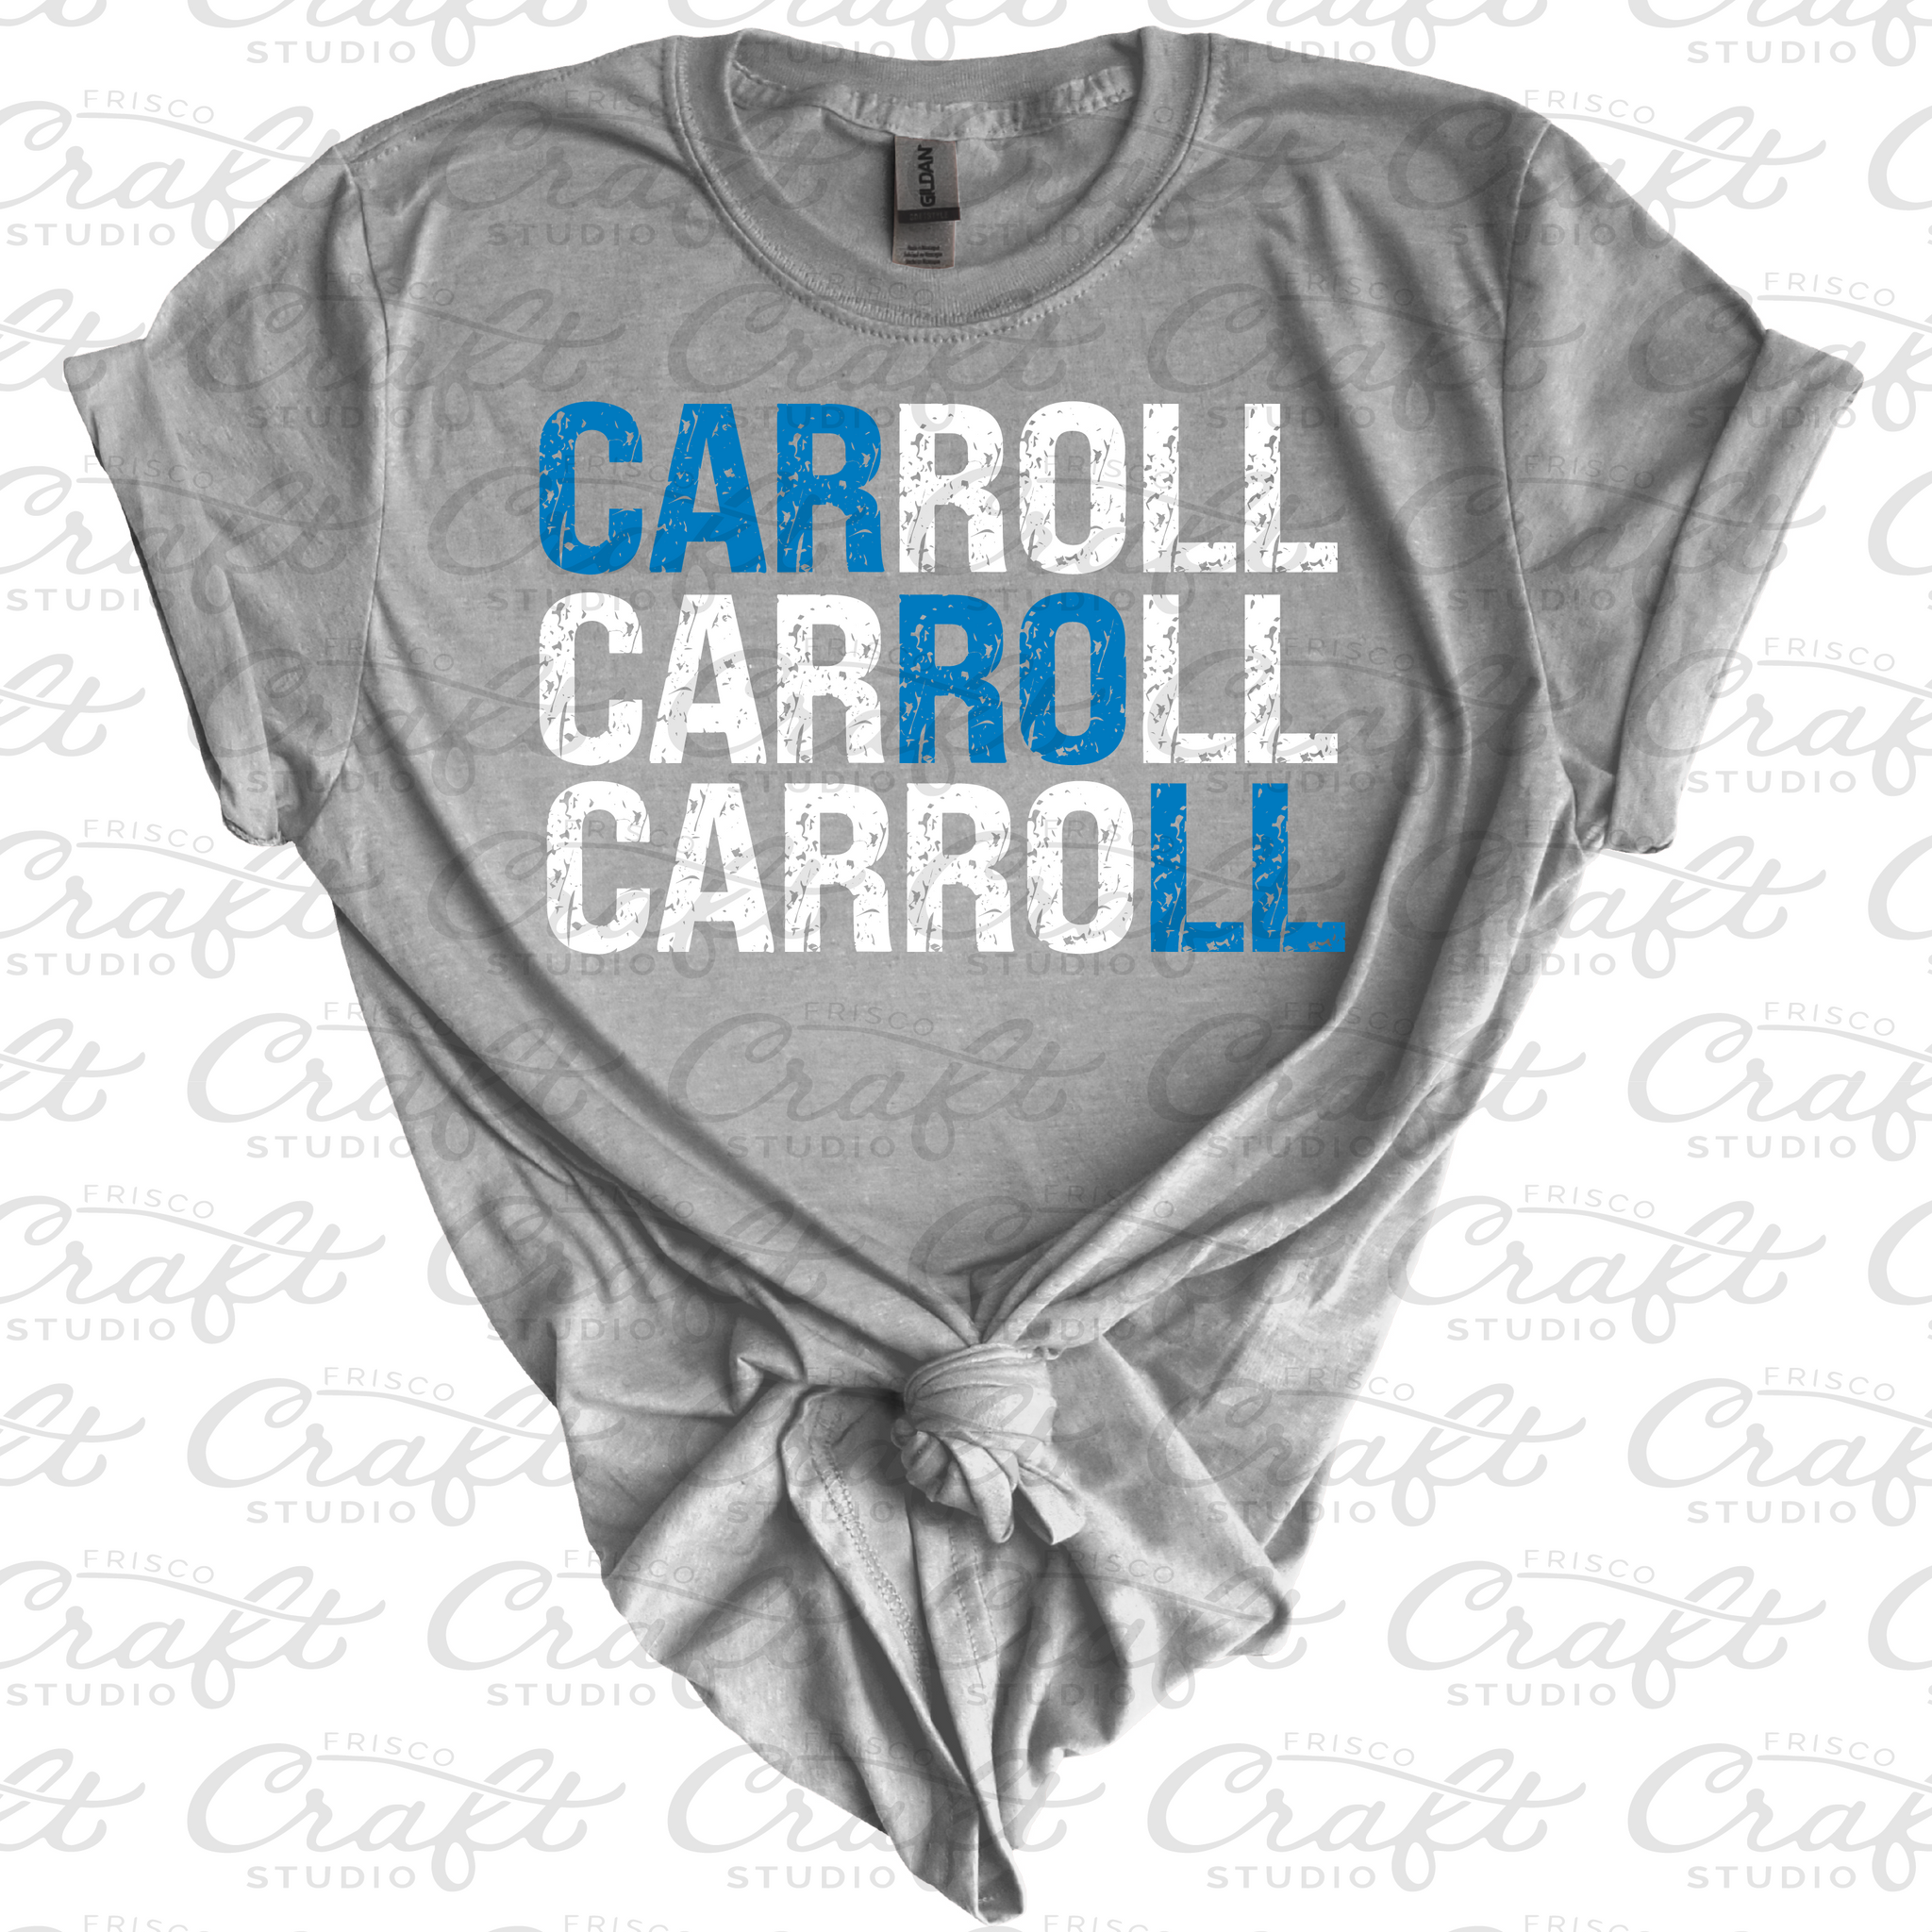 Carroll Carroll Carroll